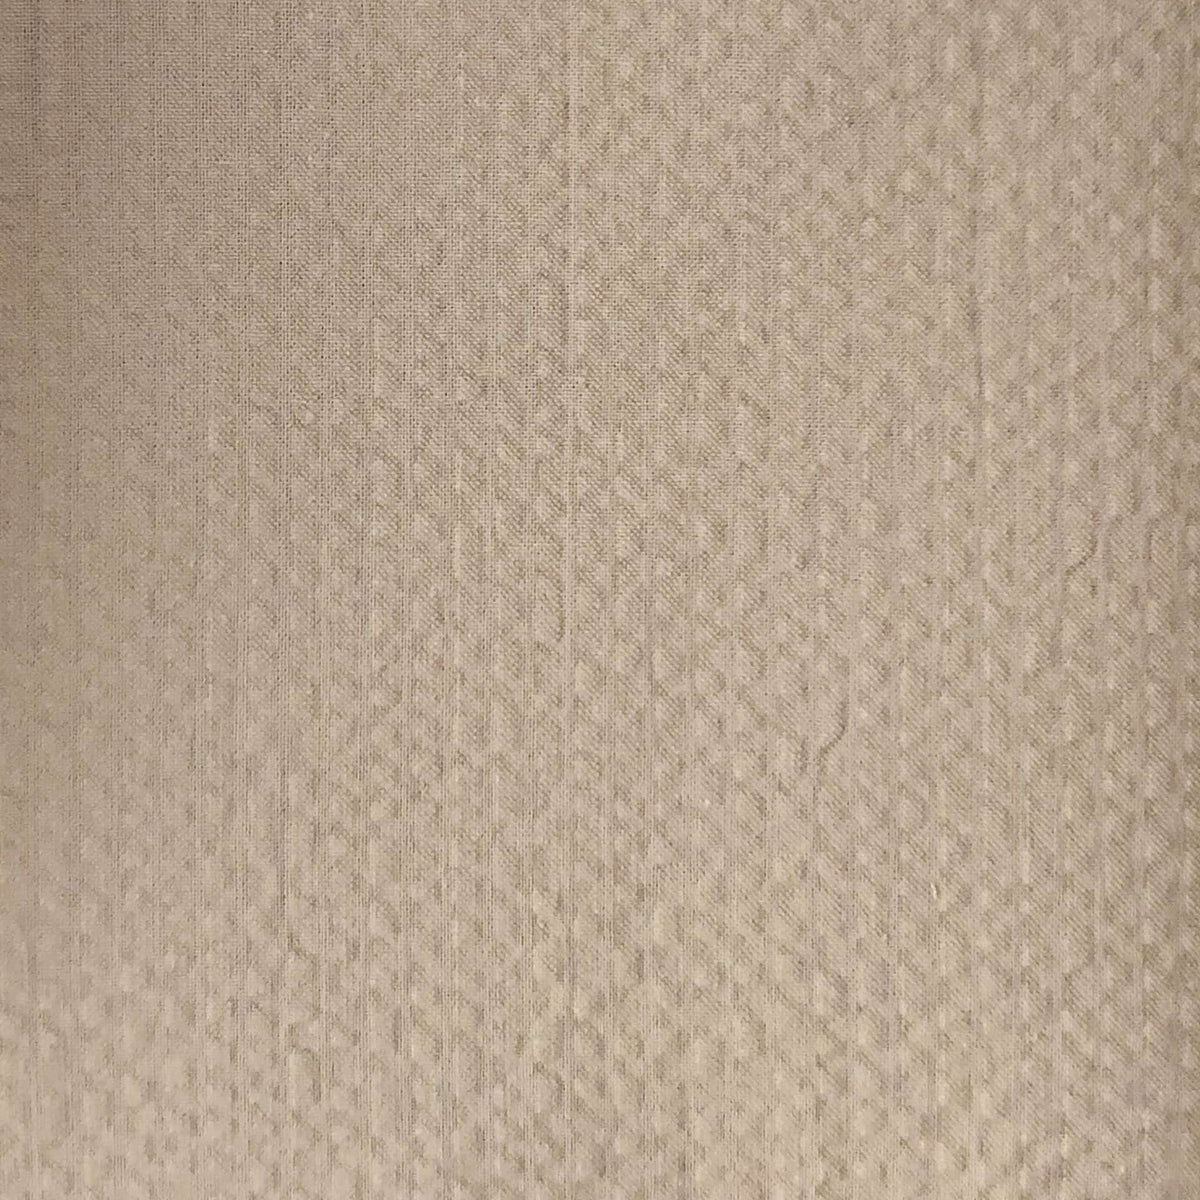 Custom made suit - seersucker-tan-beige-japanese fabric-onceaday